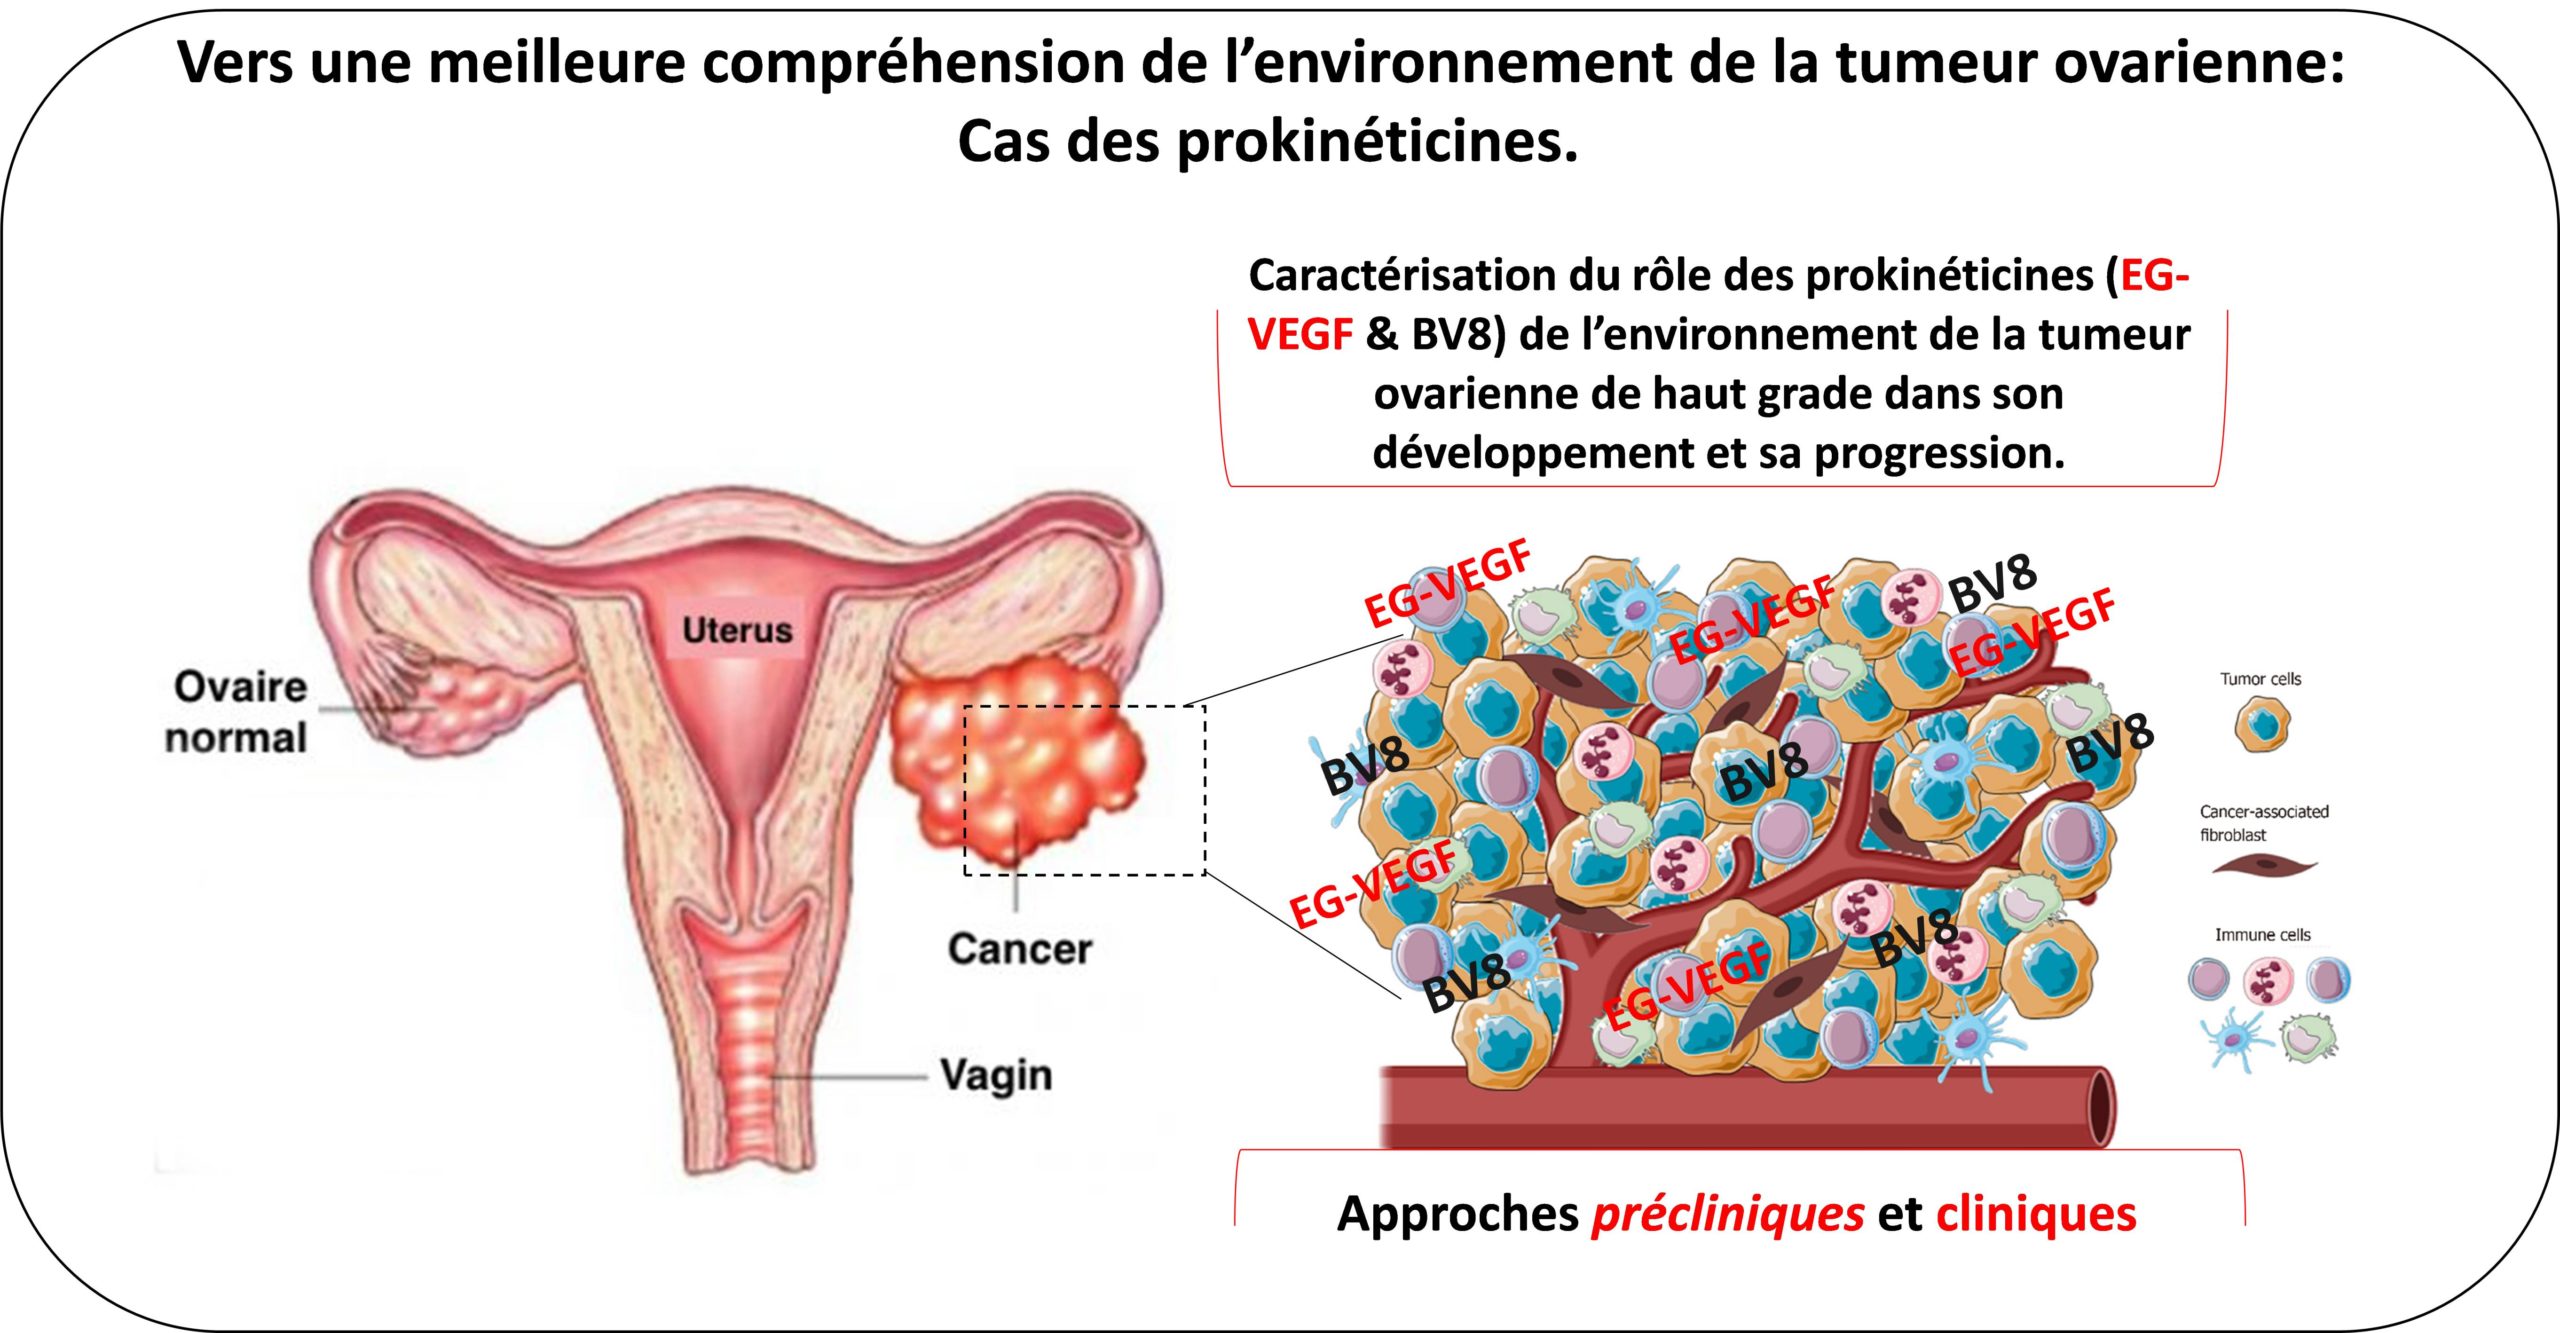 Vers une meilleure compréhension de l'environnement de la tumeur ovarienne